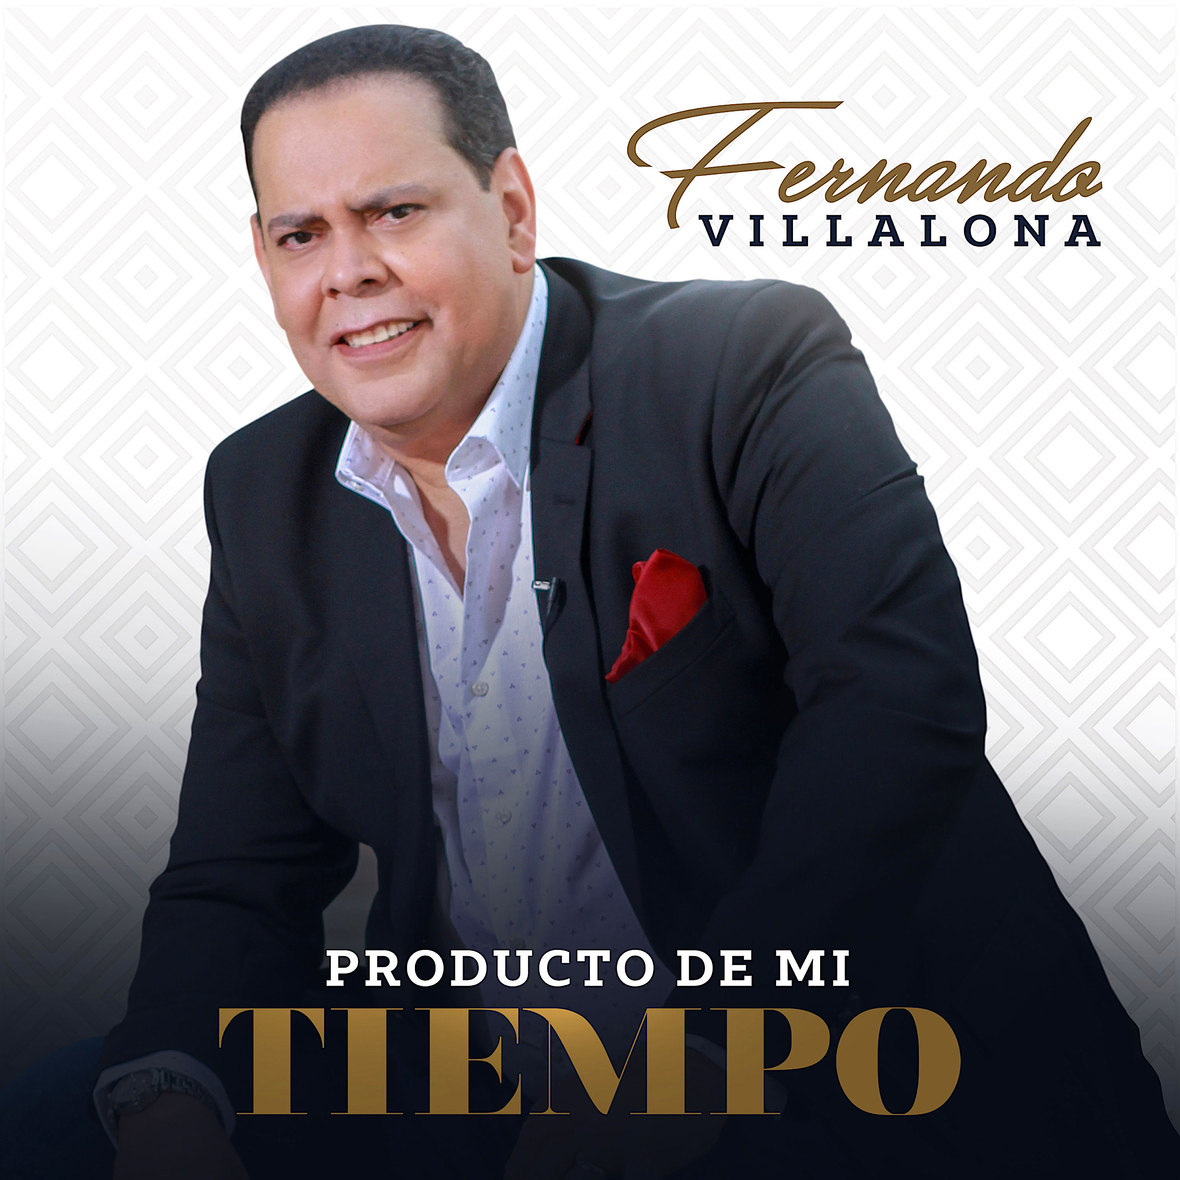 FERNANDO-VILLALONA-Producto-De-Mi-Tiempo-1